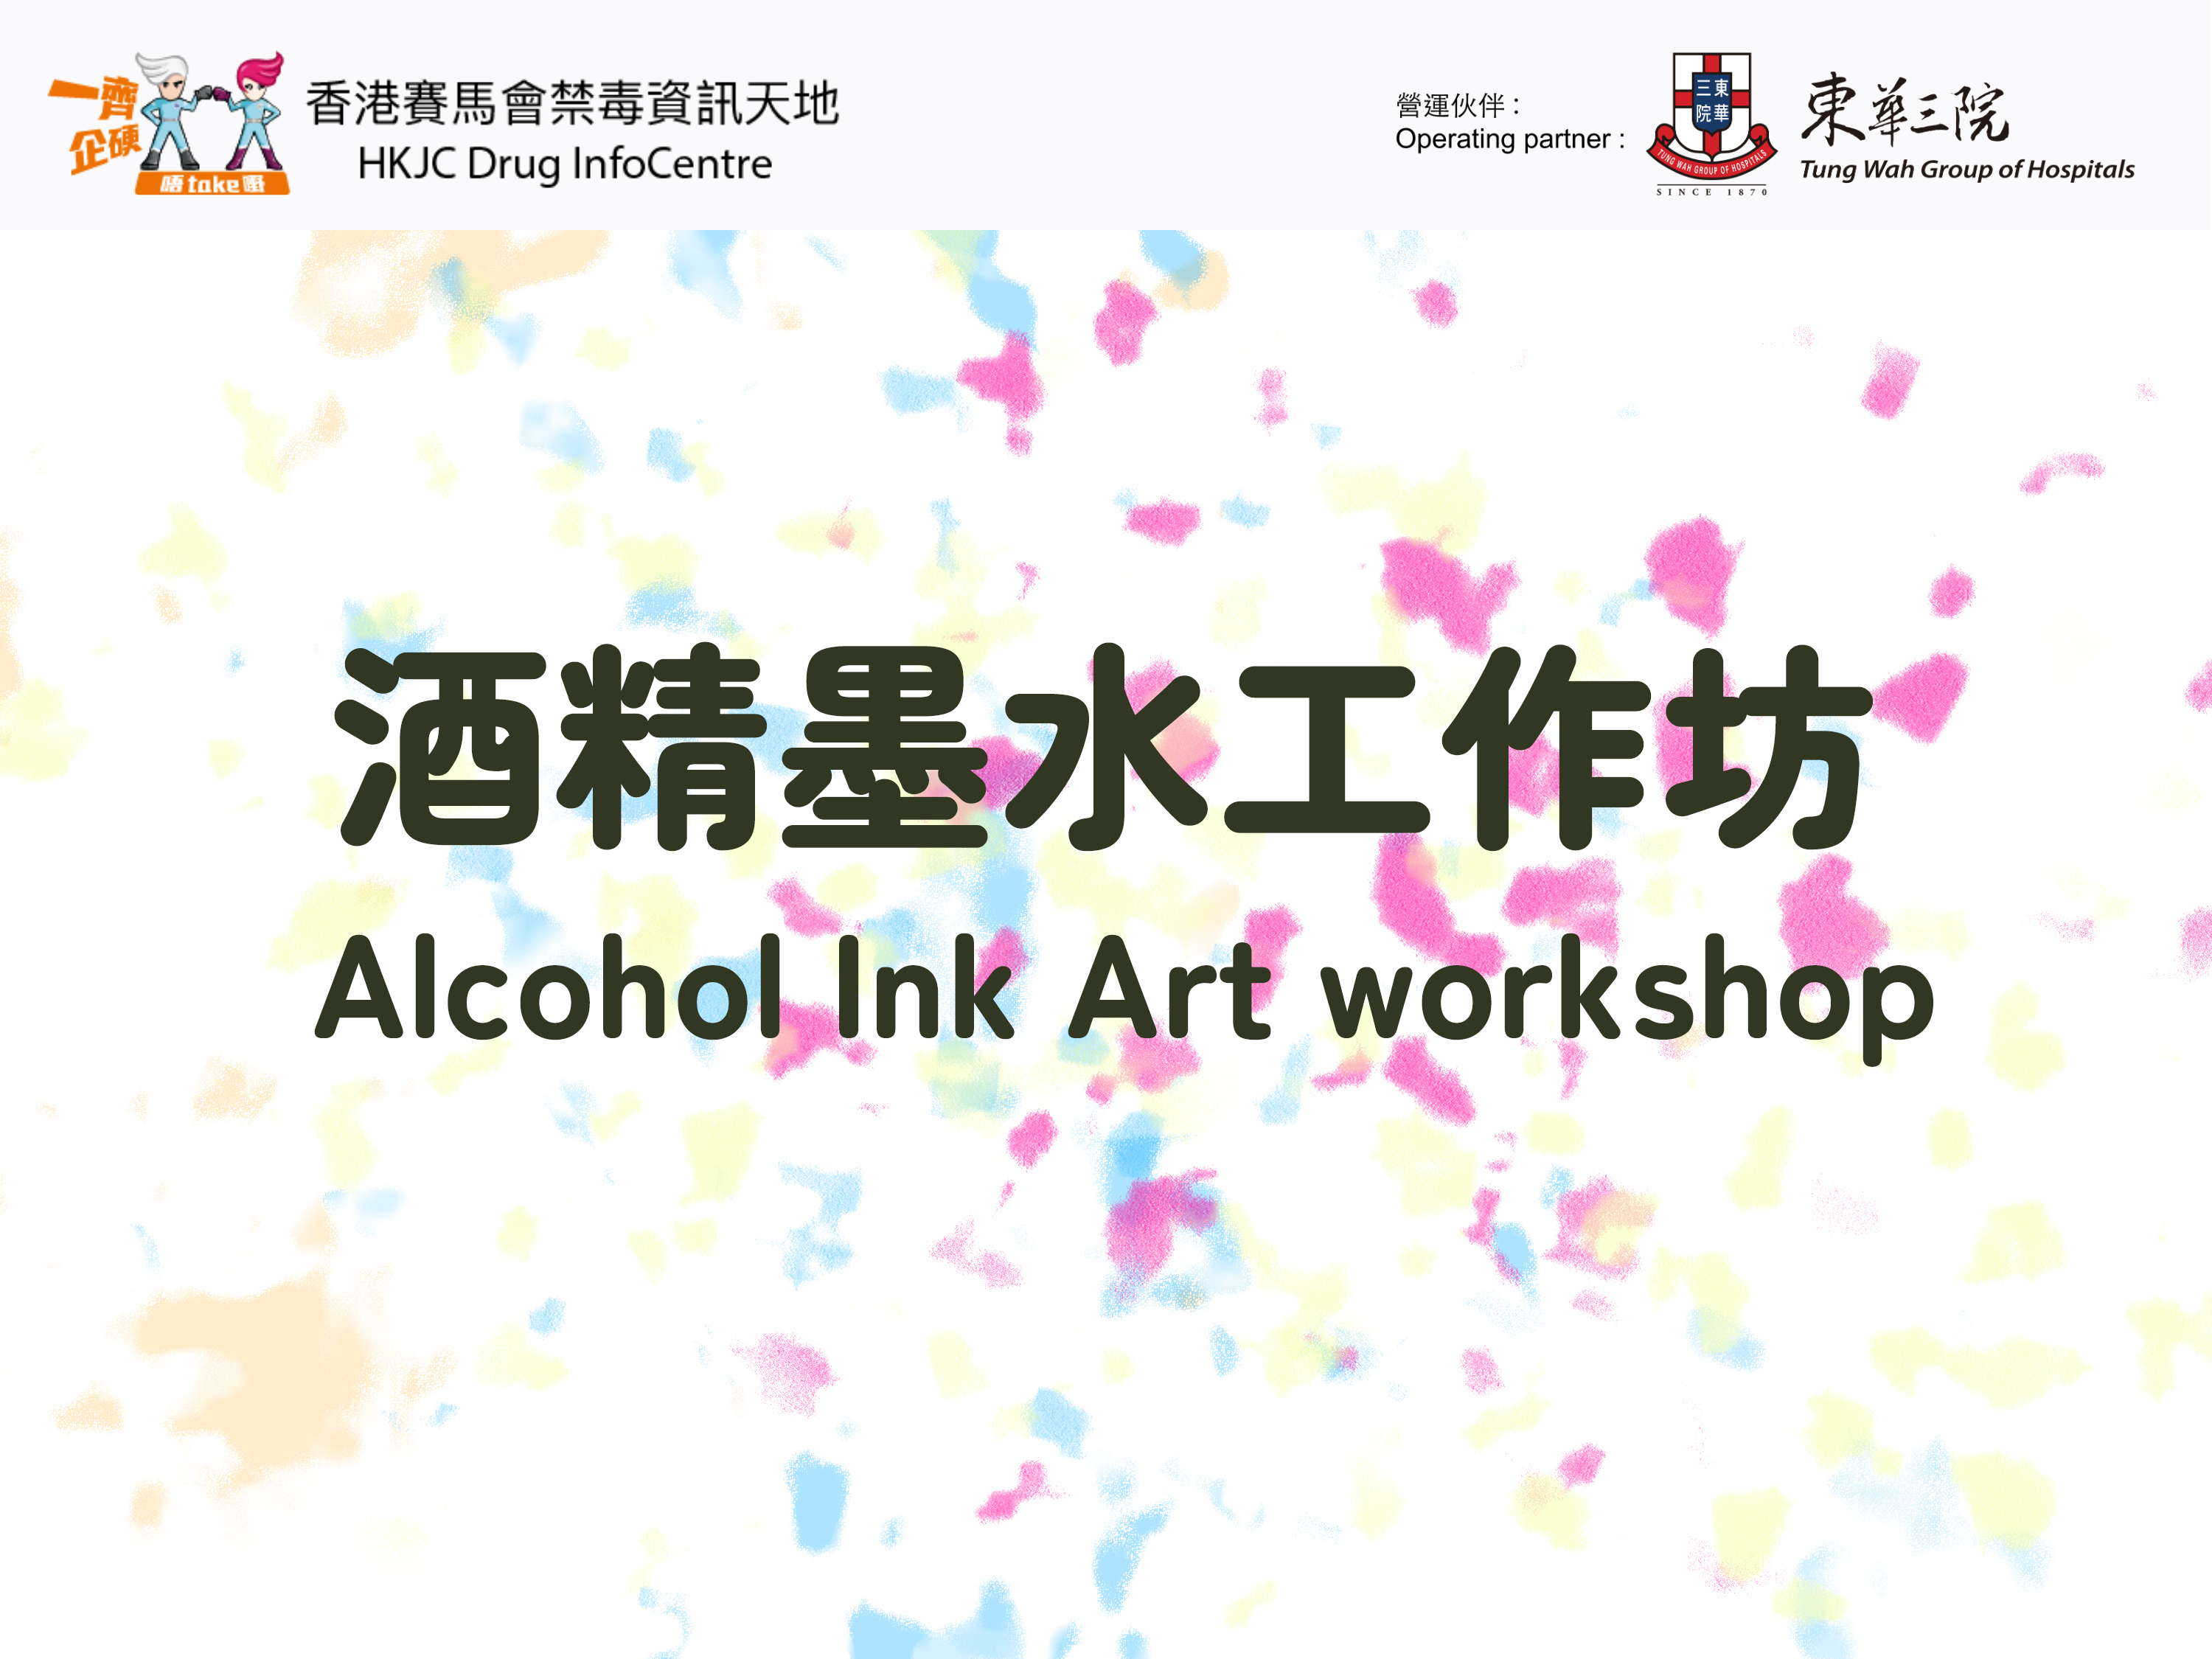 Alcohol Ink Art workshop